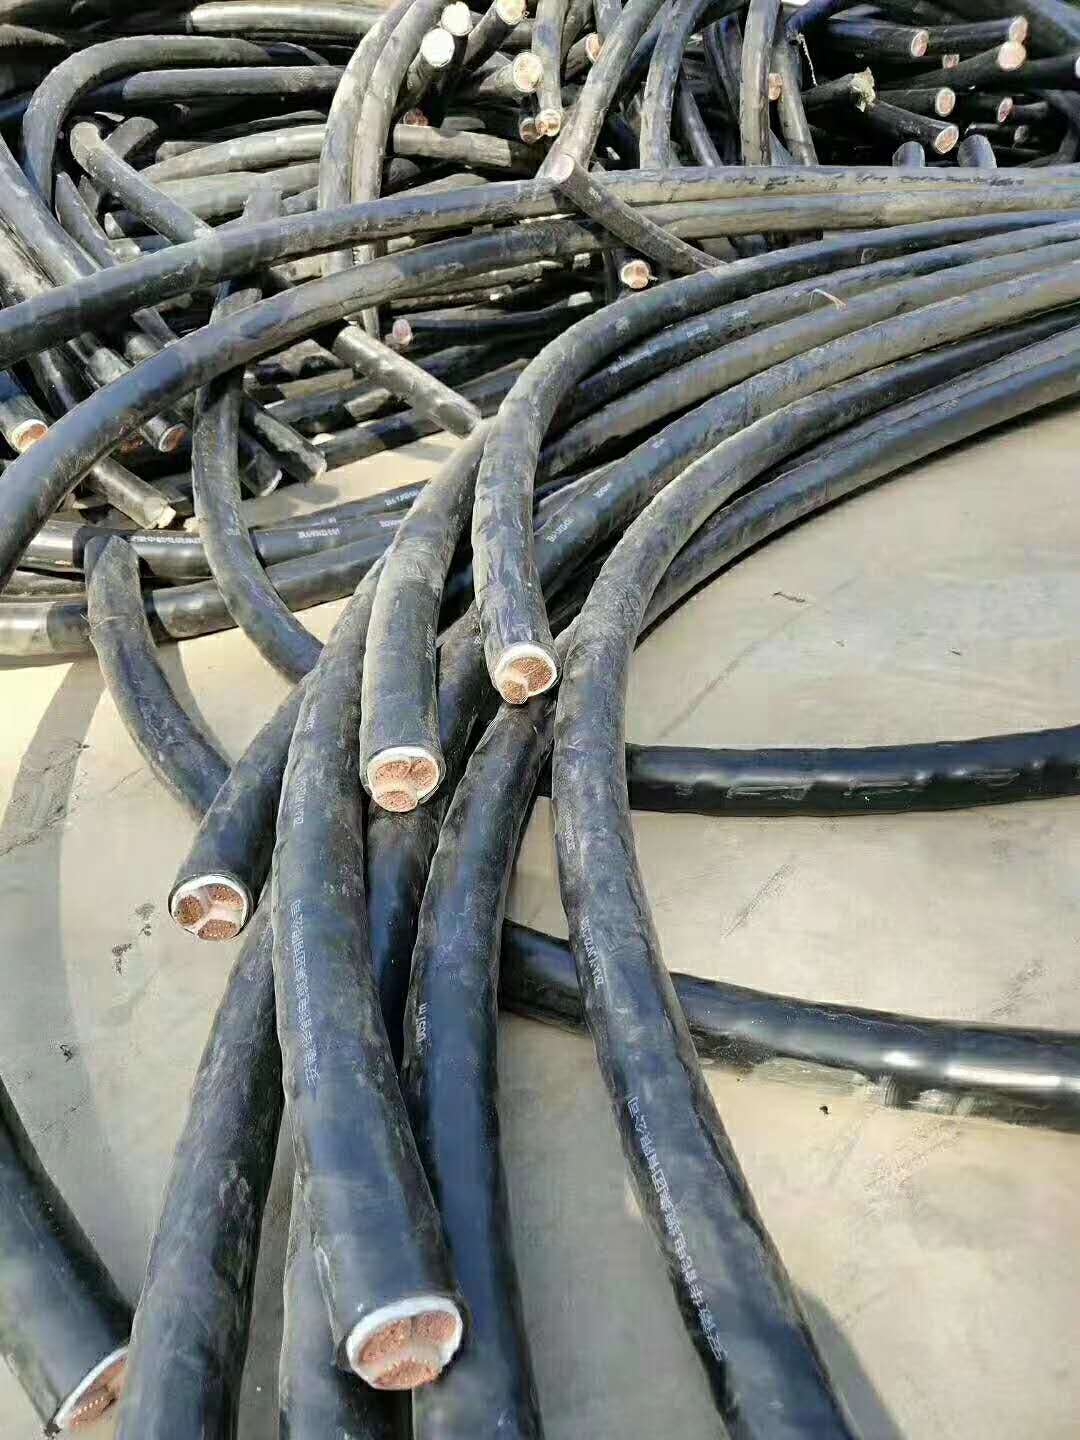 肇庆四会市废旧电缆回收,电力电缆回收,库存积压电缆回收